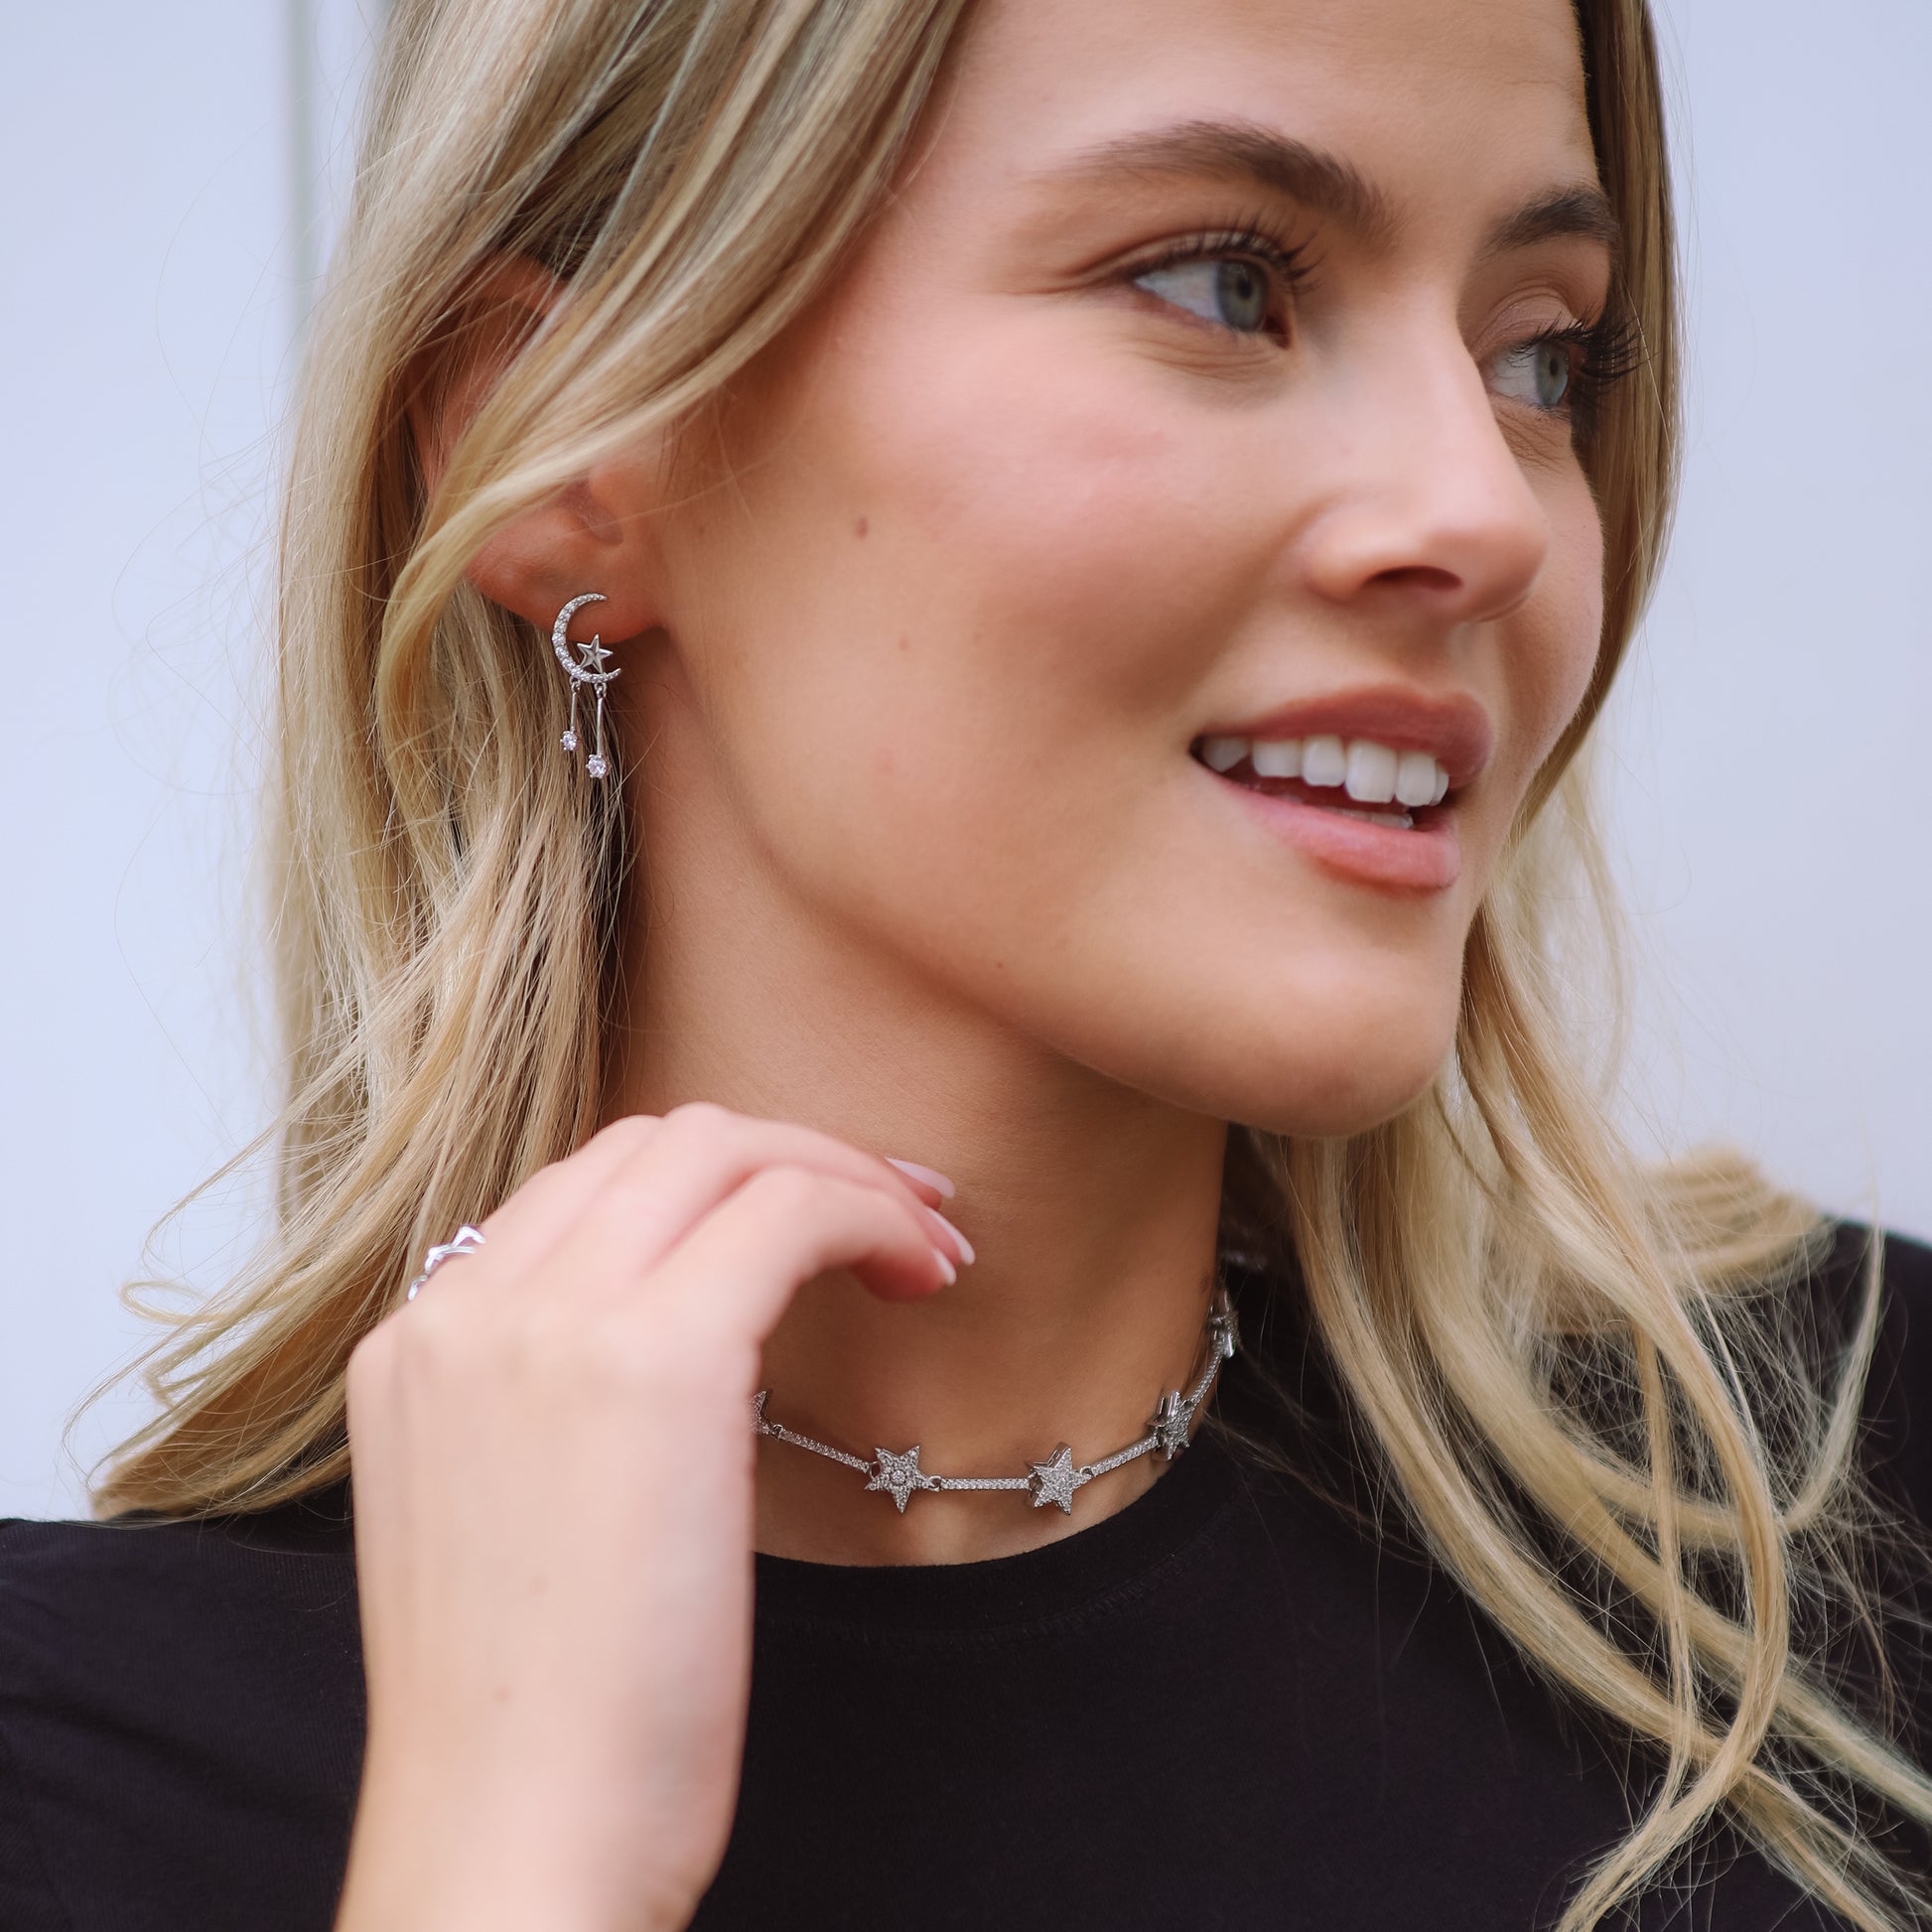 Zoe Moon & Star Drop Earrings | 925 Sterling Silver